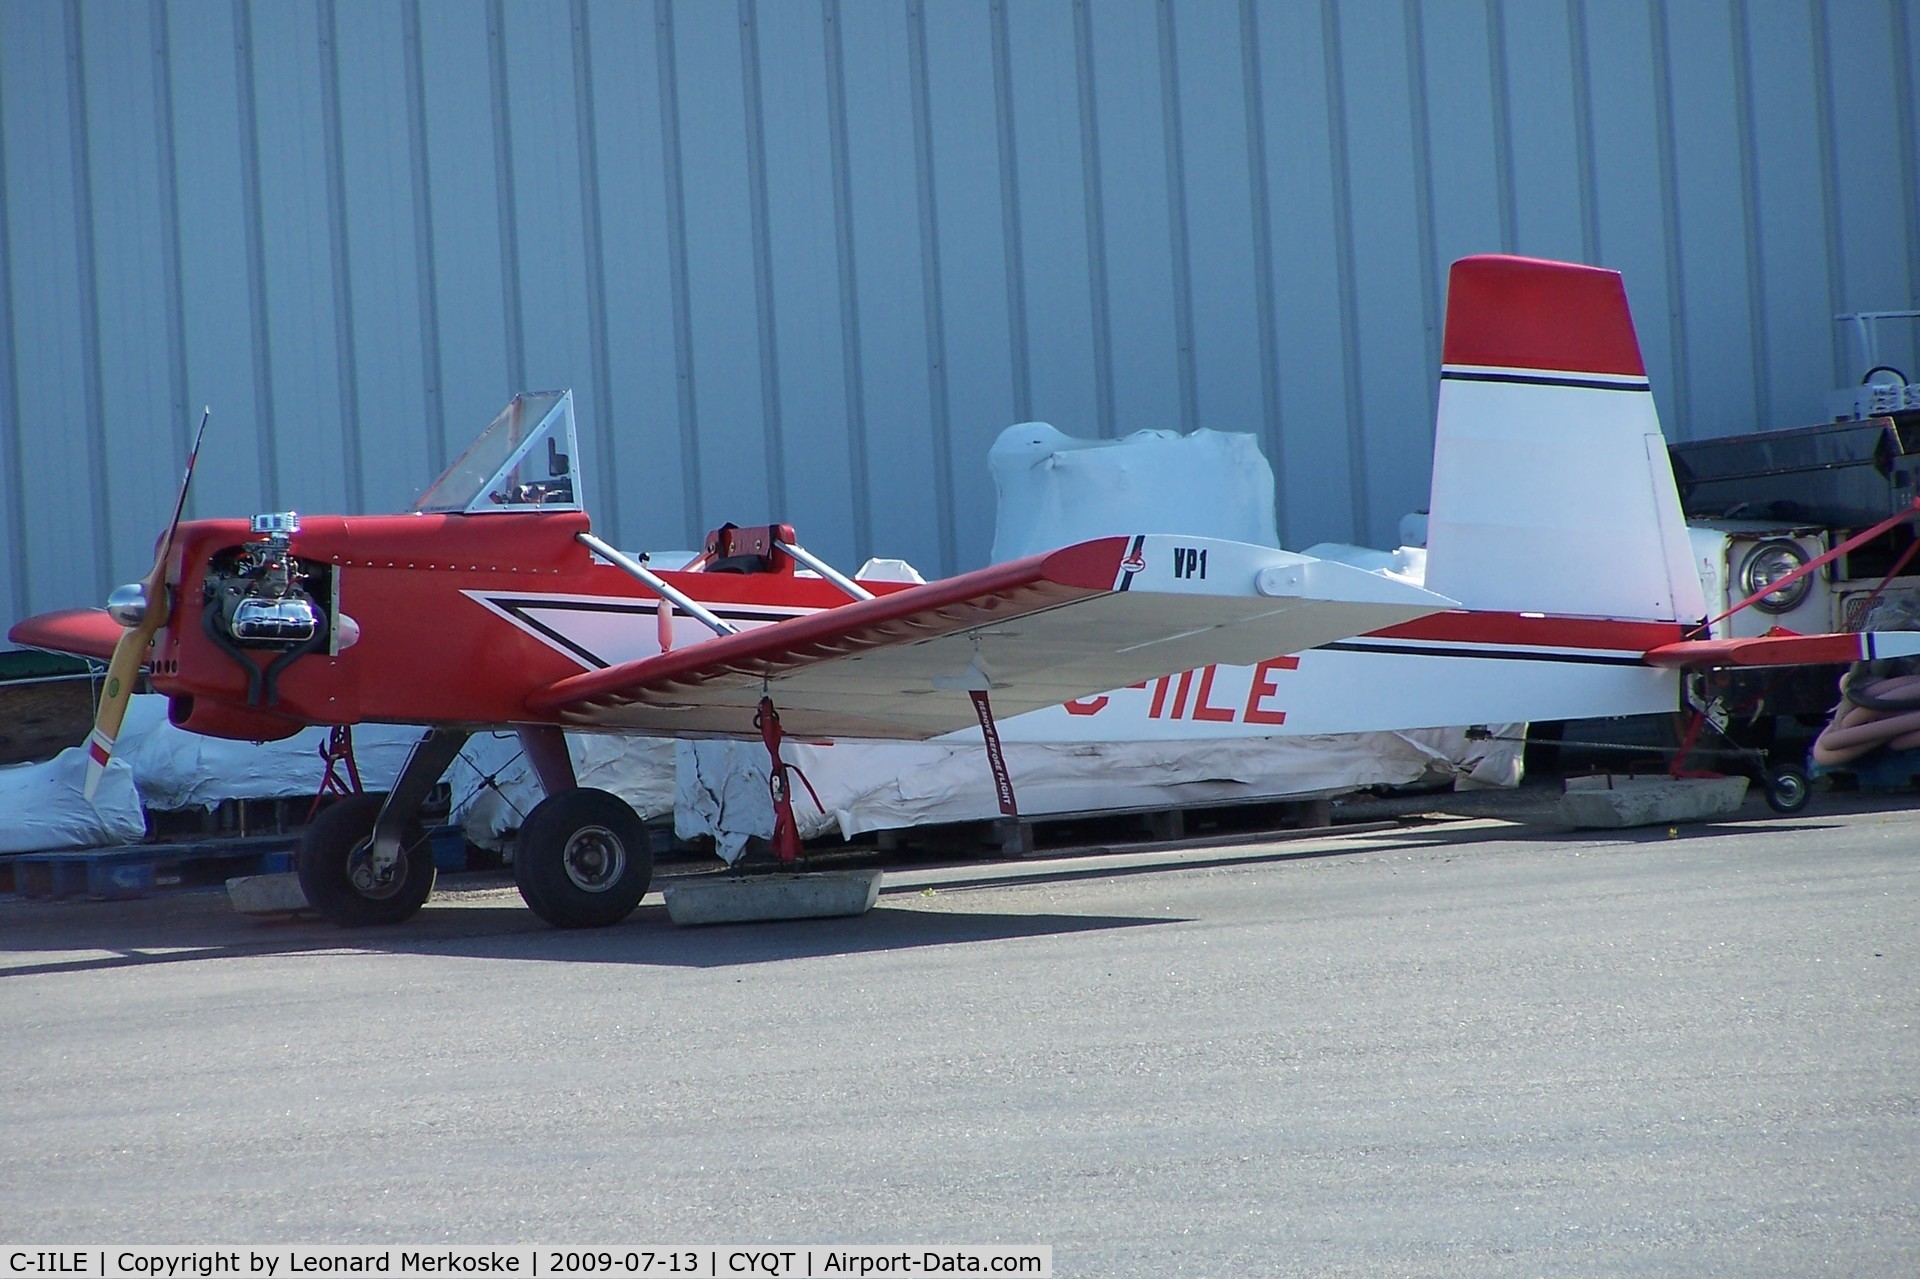 C-IILE, 2009 Evans VP-1 Volksplane C/N 00250362, Near Bearskin Airlines hangar at Thunder Bay Airport